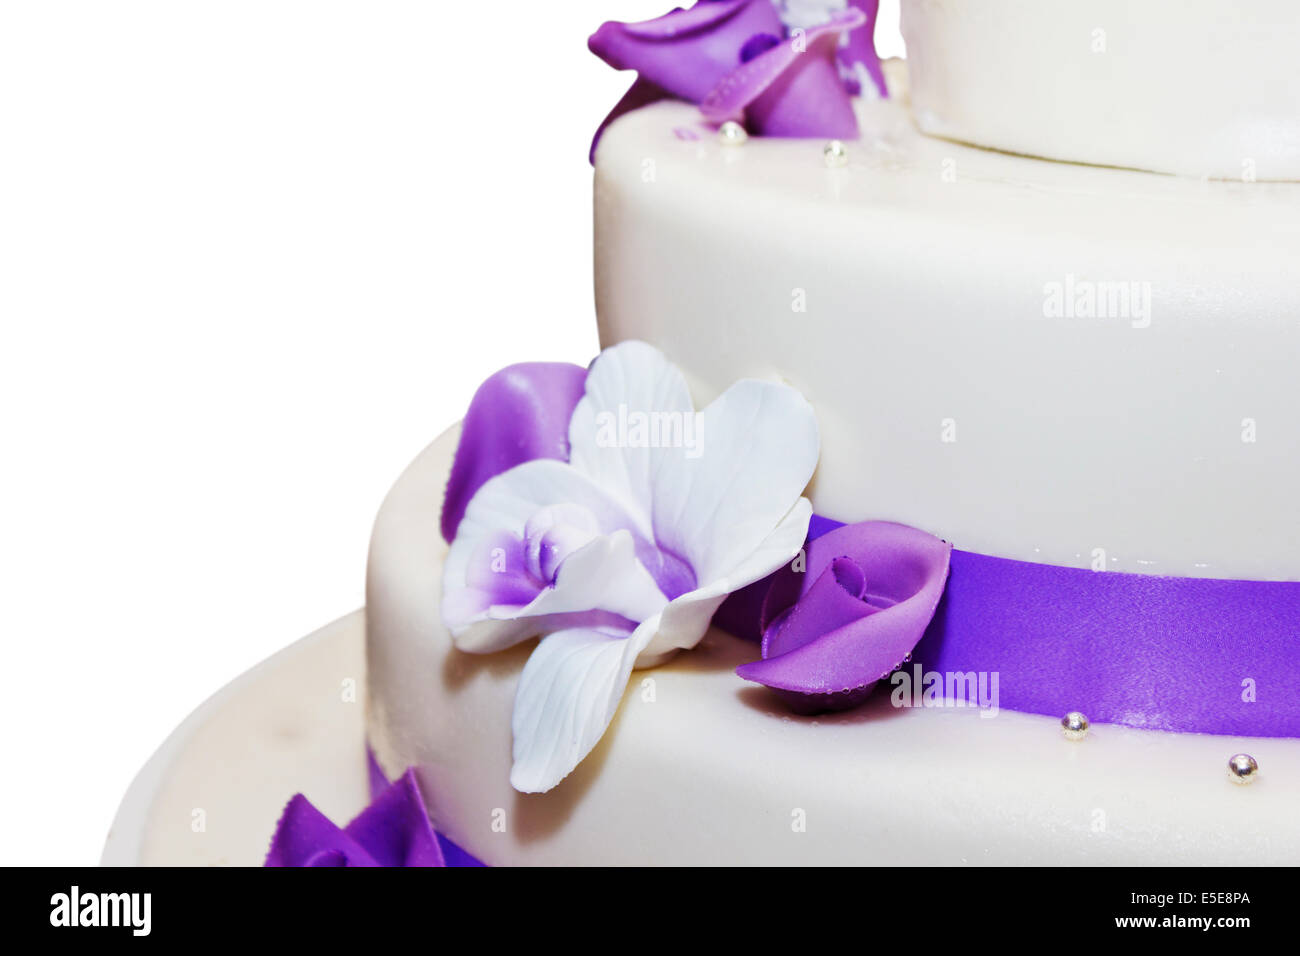 Hohen Hochzeitstorte mit lila Streifen und Blume Dekorationen Stockfoto